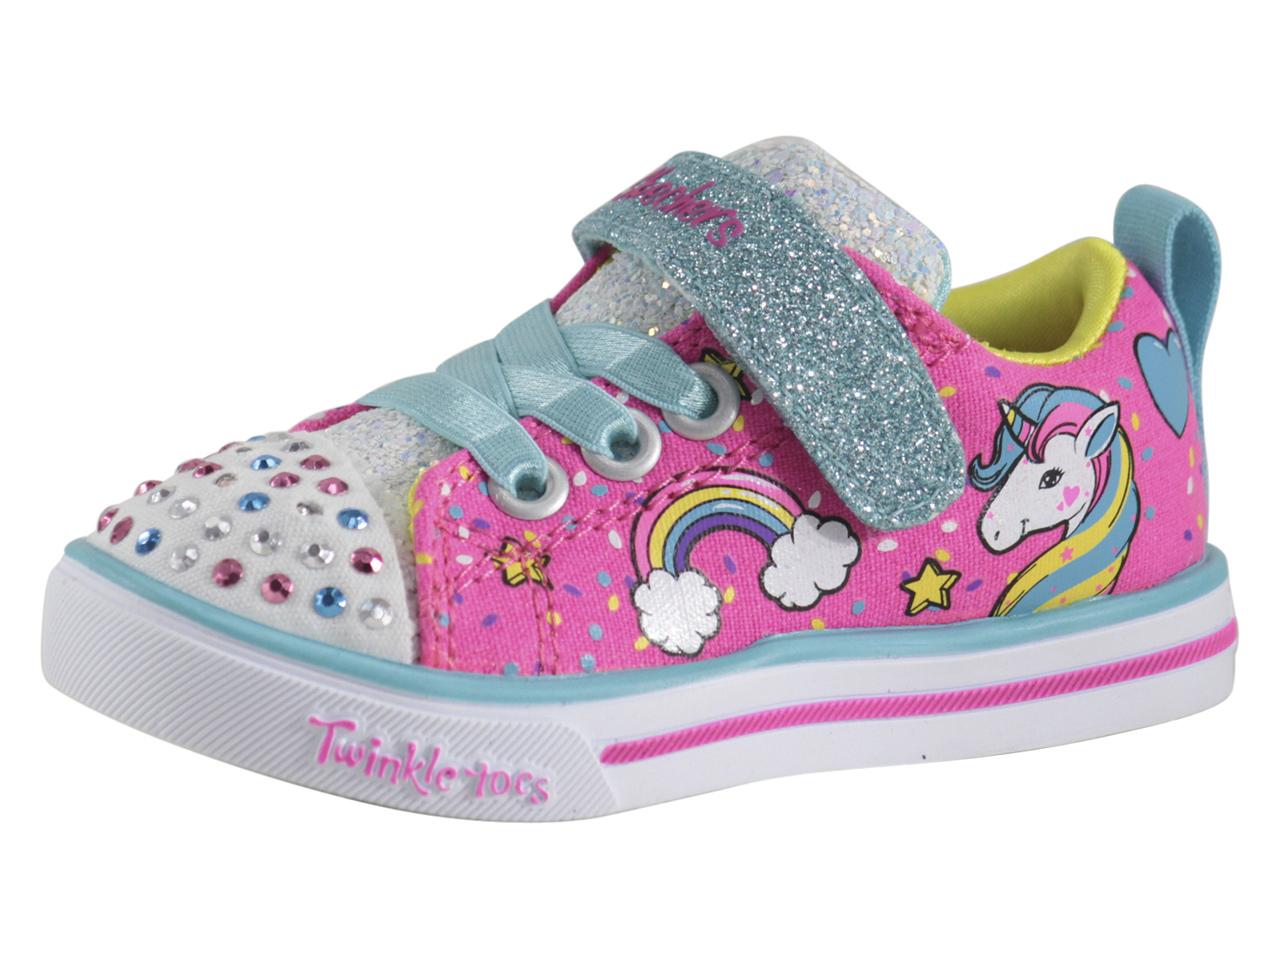 Skechers Toddler/Little Girl's S-Lights Unicorn Craze Light Up Sneakers ...